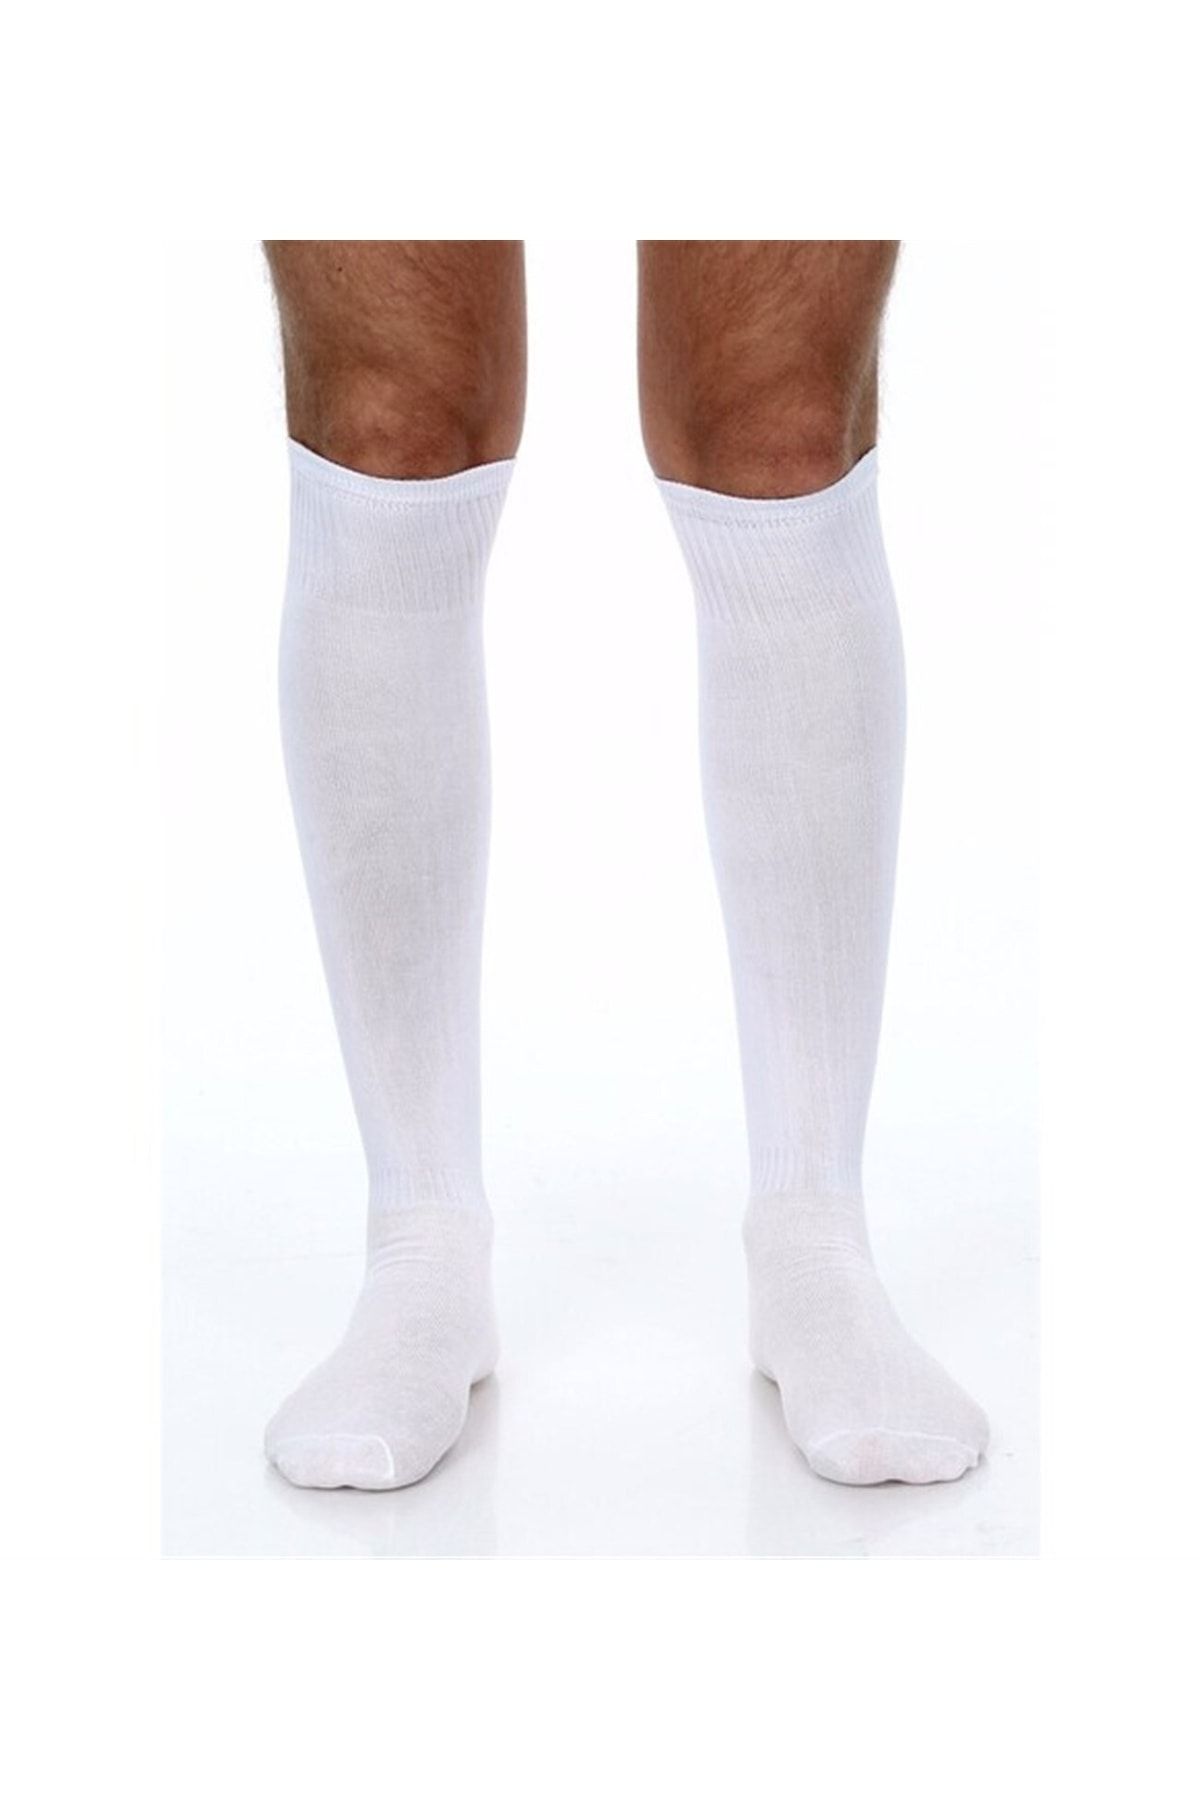 Vertex Süper Konç - Beyaz 40-45 Uzun Futbol Çorabı - Vrtxkonç